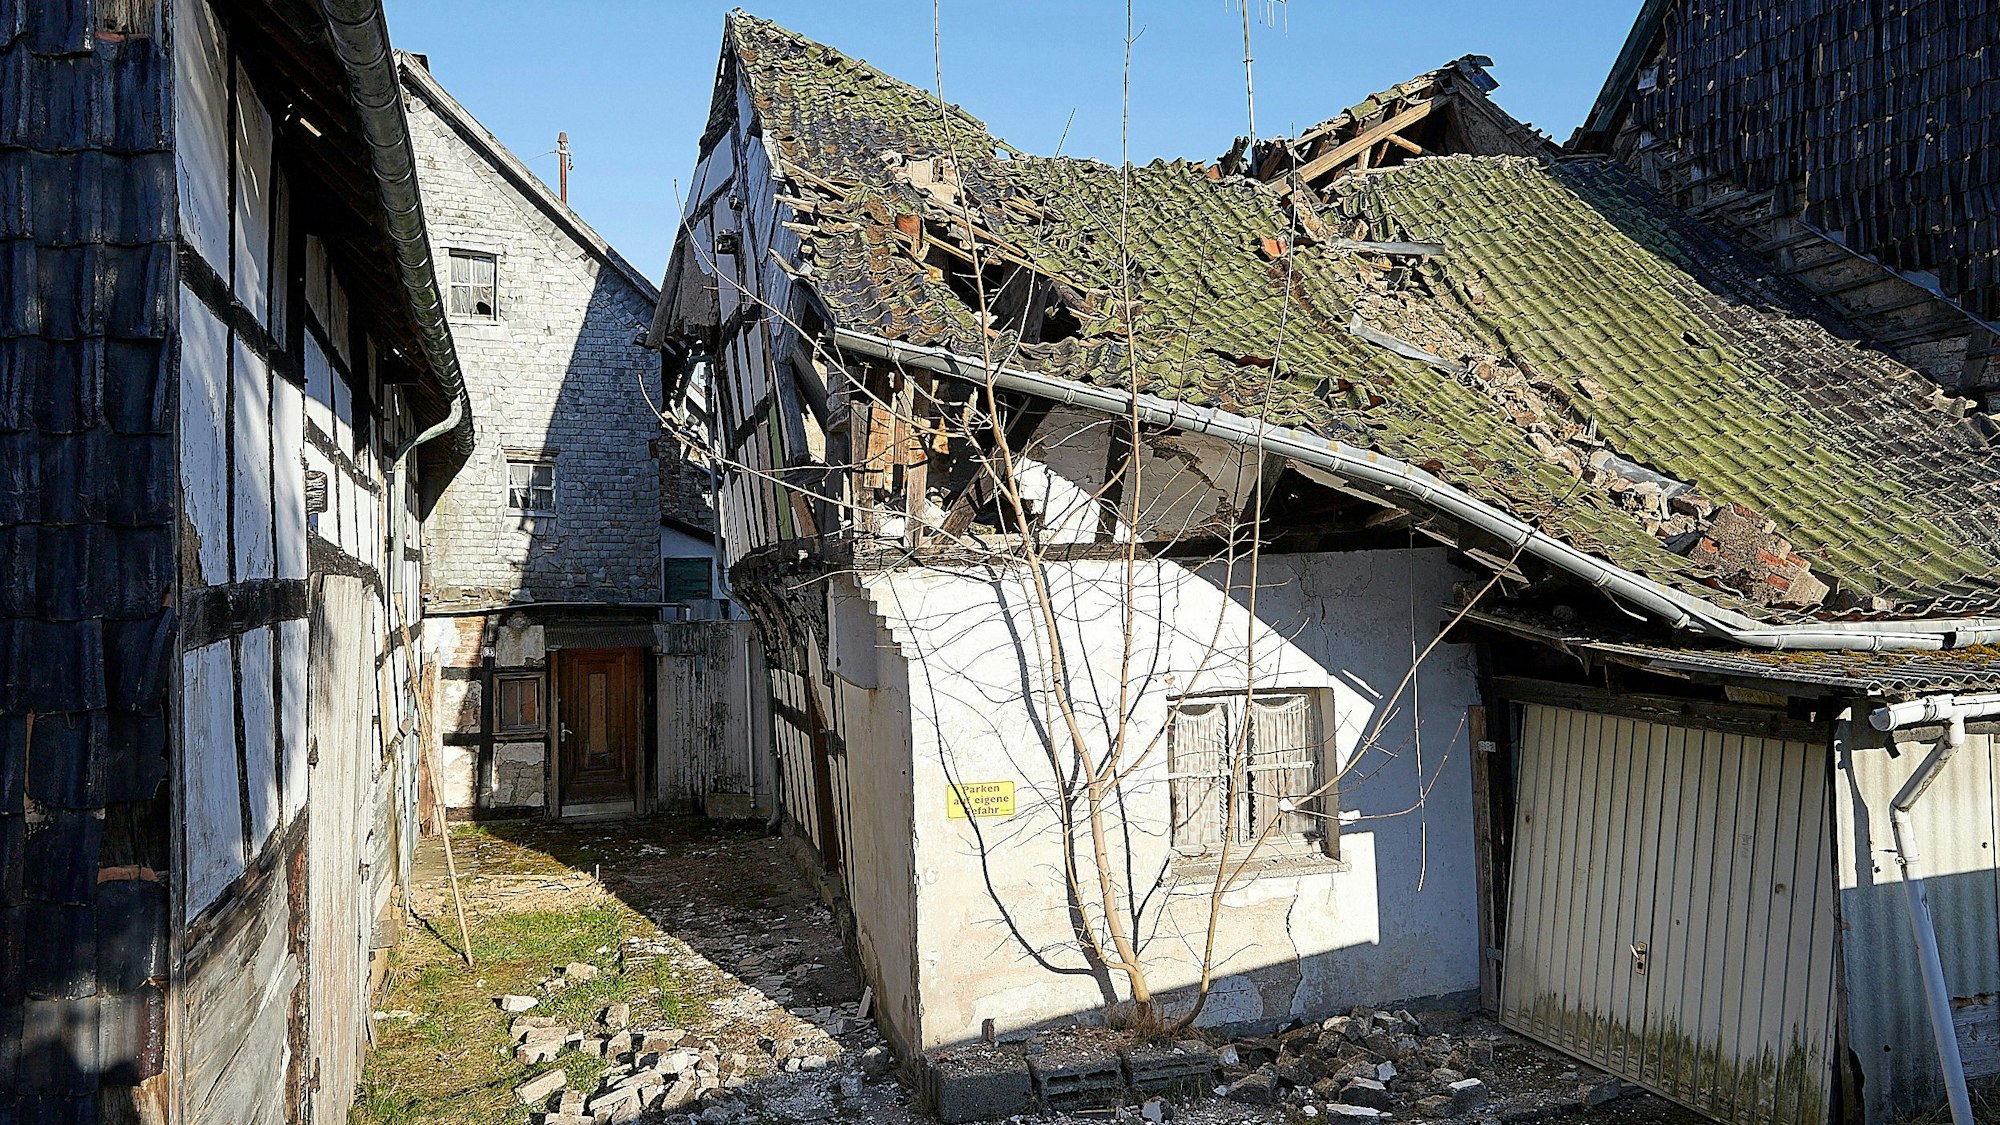 Das angeblich älteste Fachwerkhaus Hellenthal mit eingedelltem, teils eingestürztem Dach und verwahrloster Fassade.